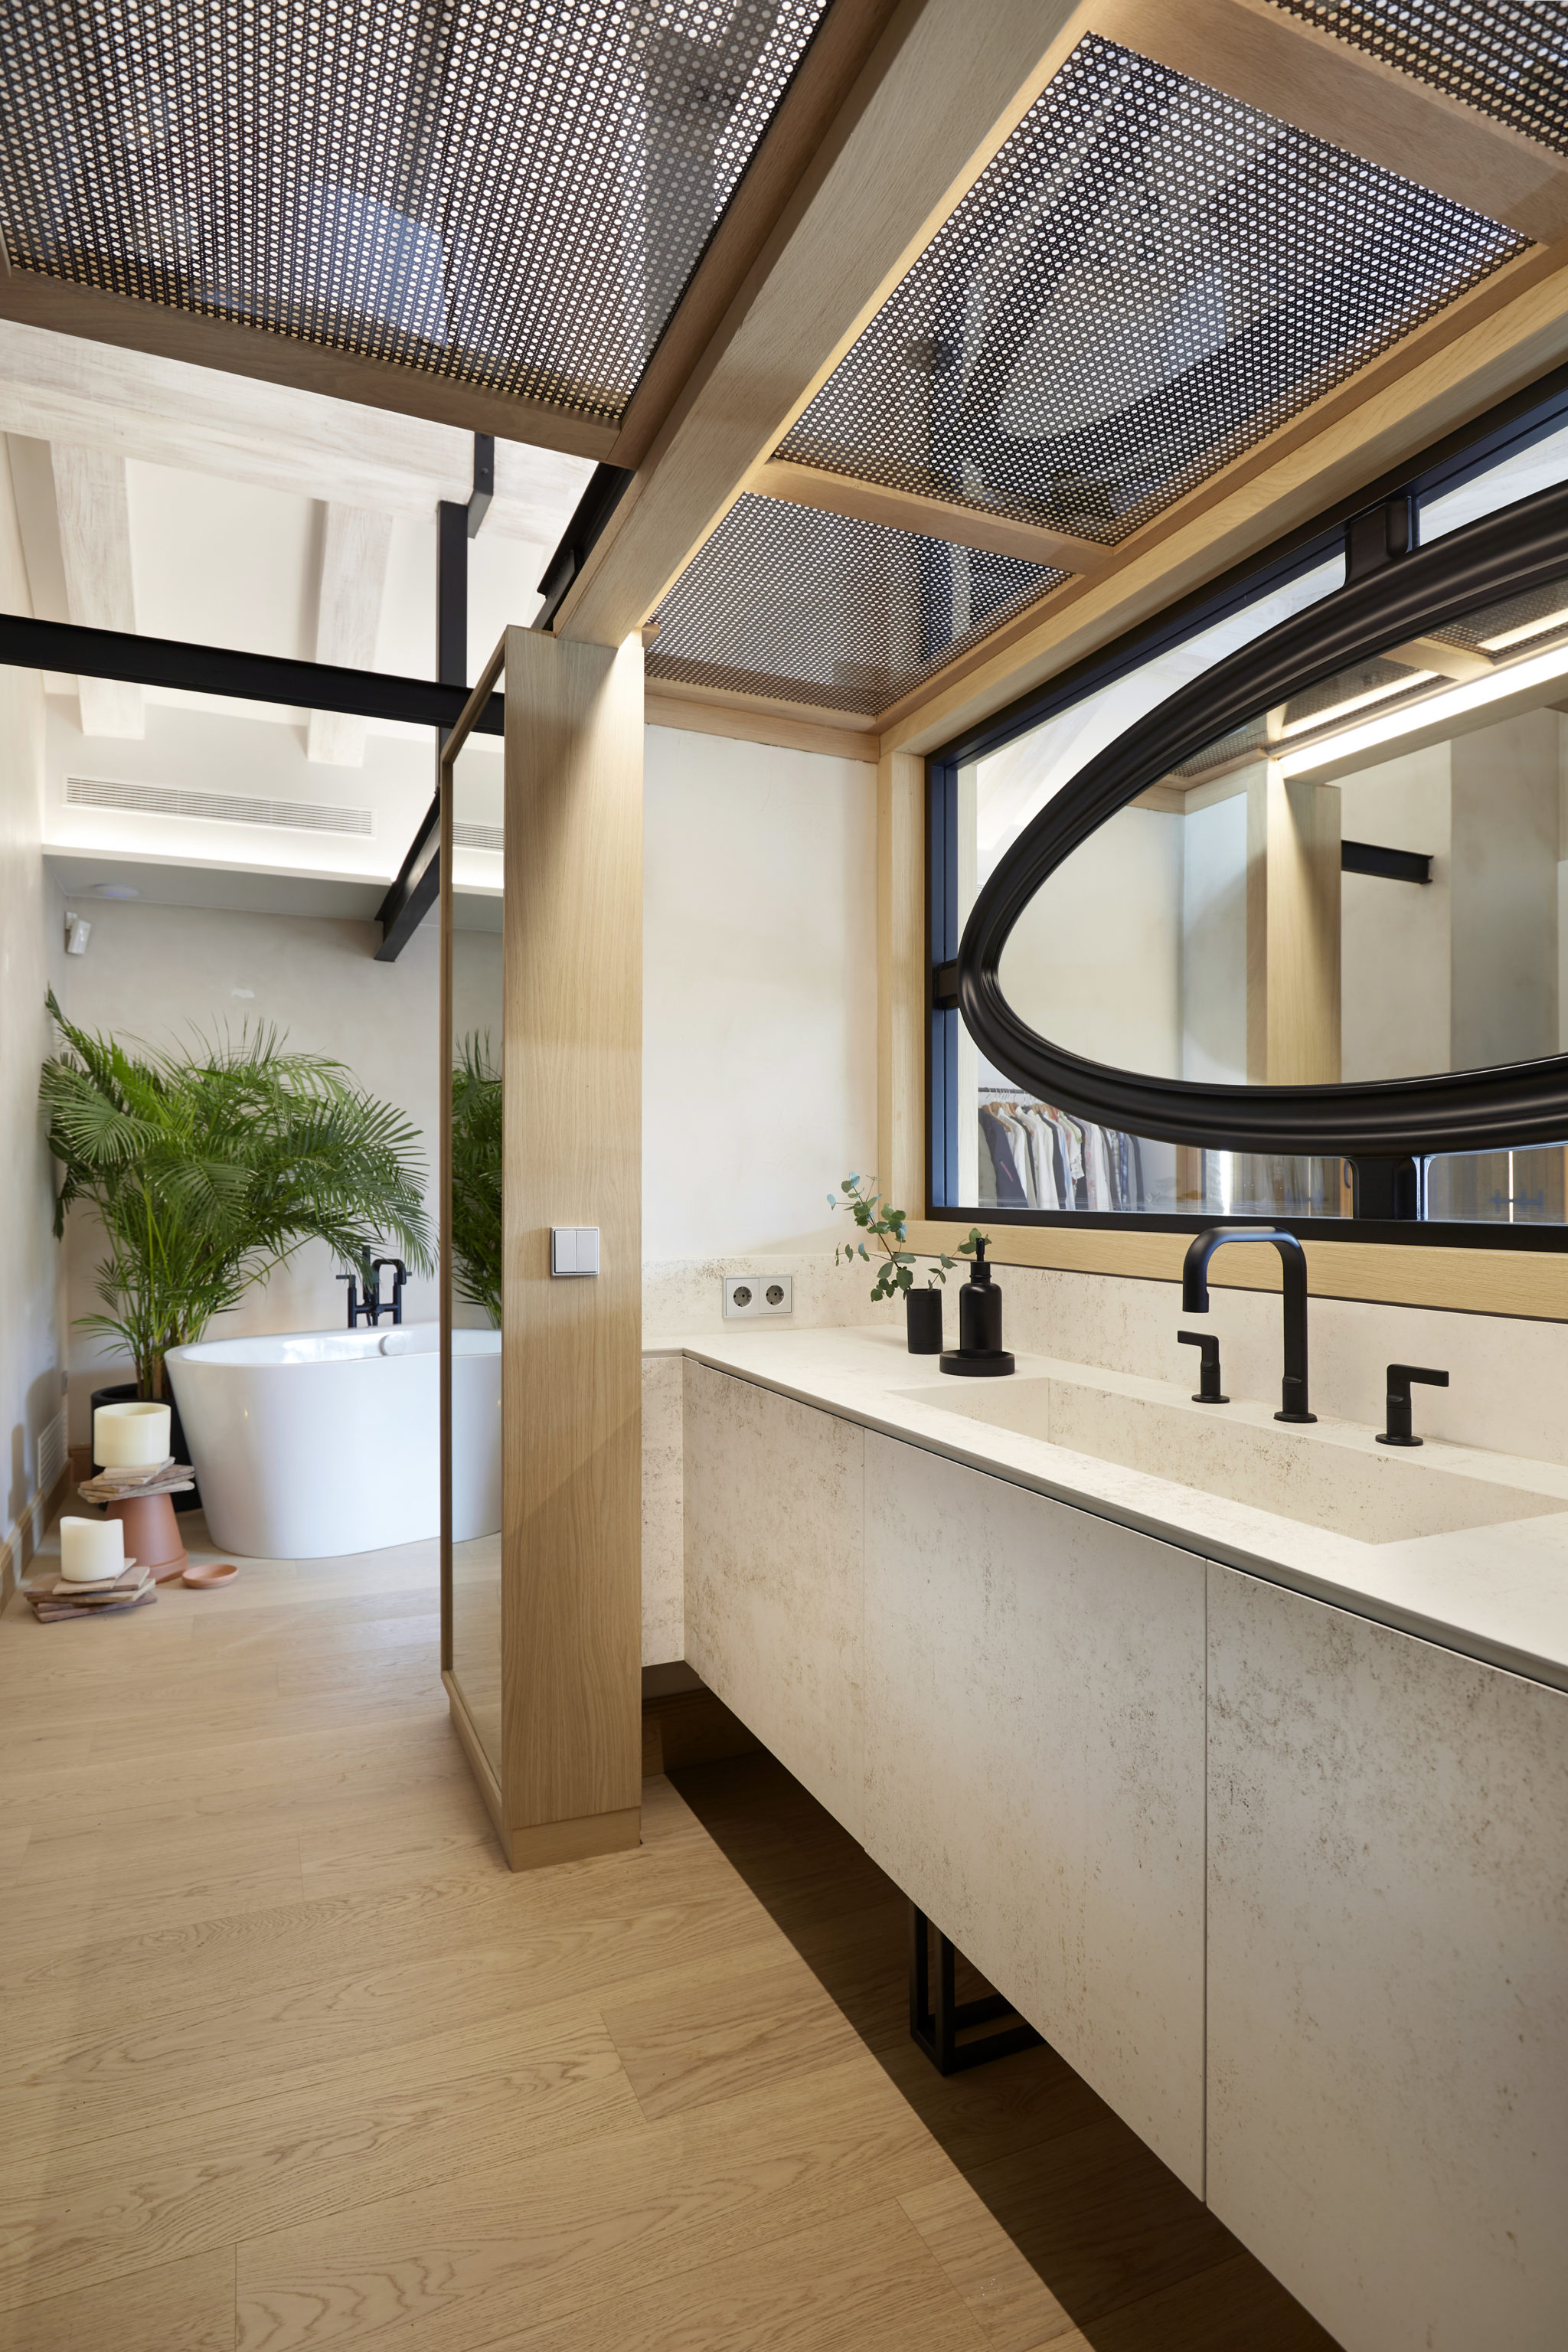 Baño in suite por Rosa Colet Interior Design